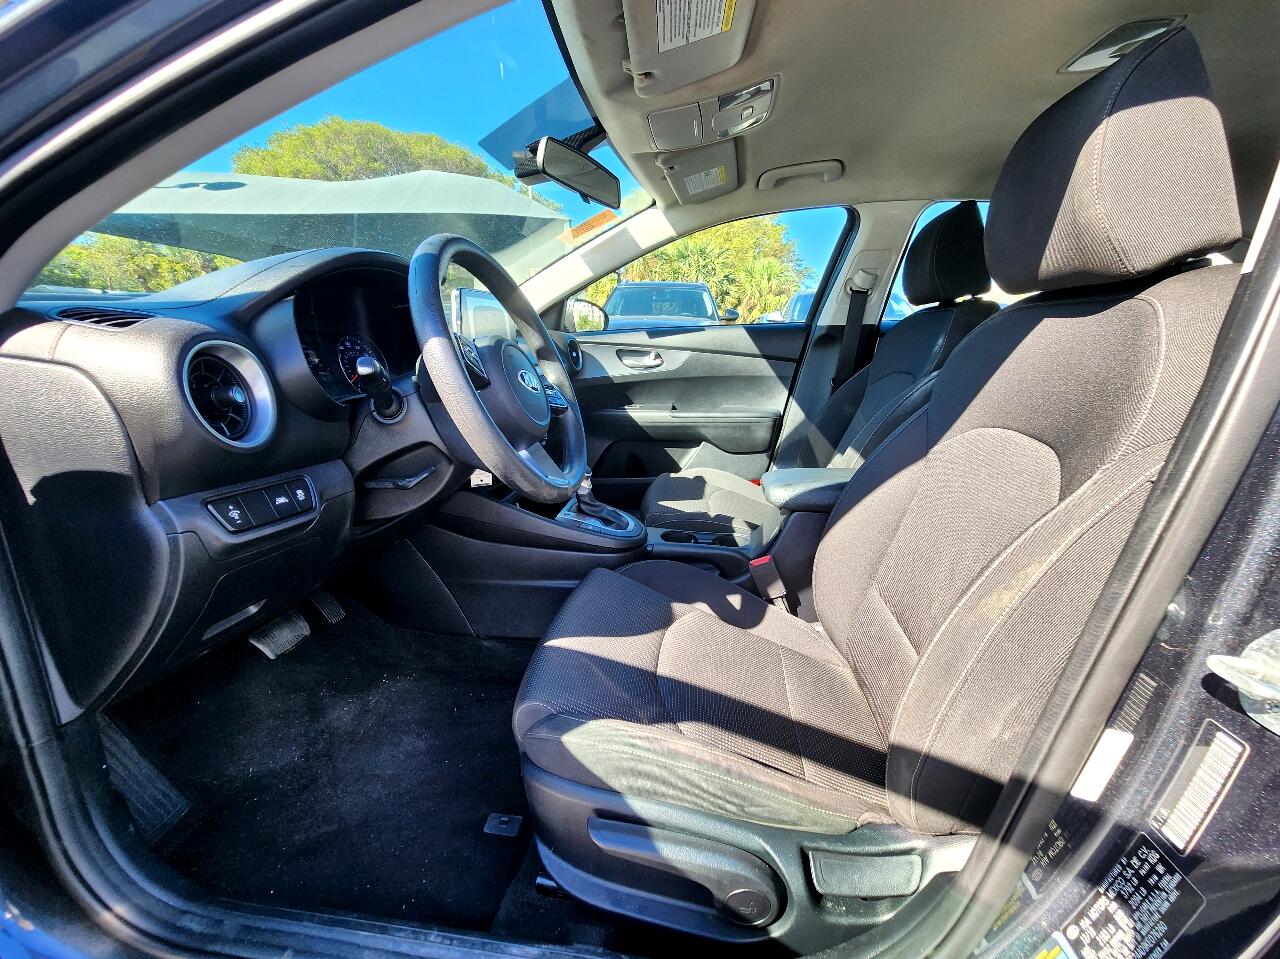 2019 KIA Forte Sedan - $12,999